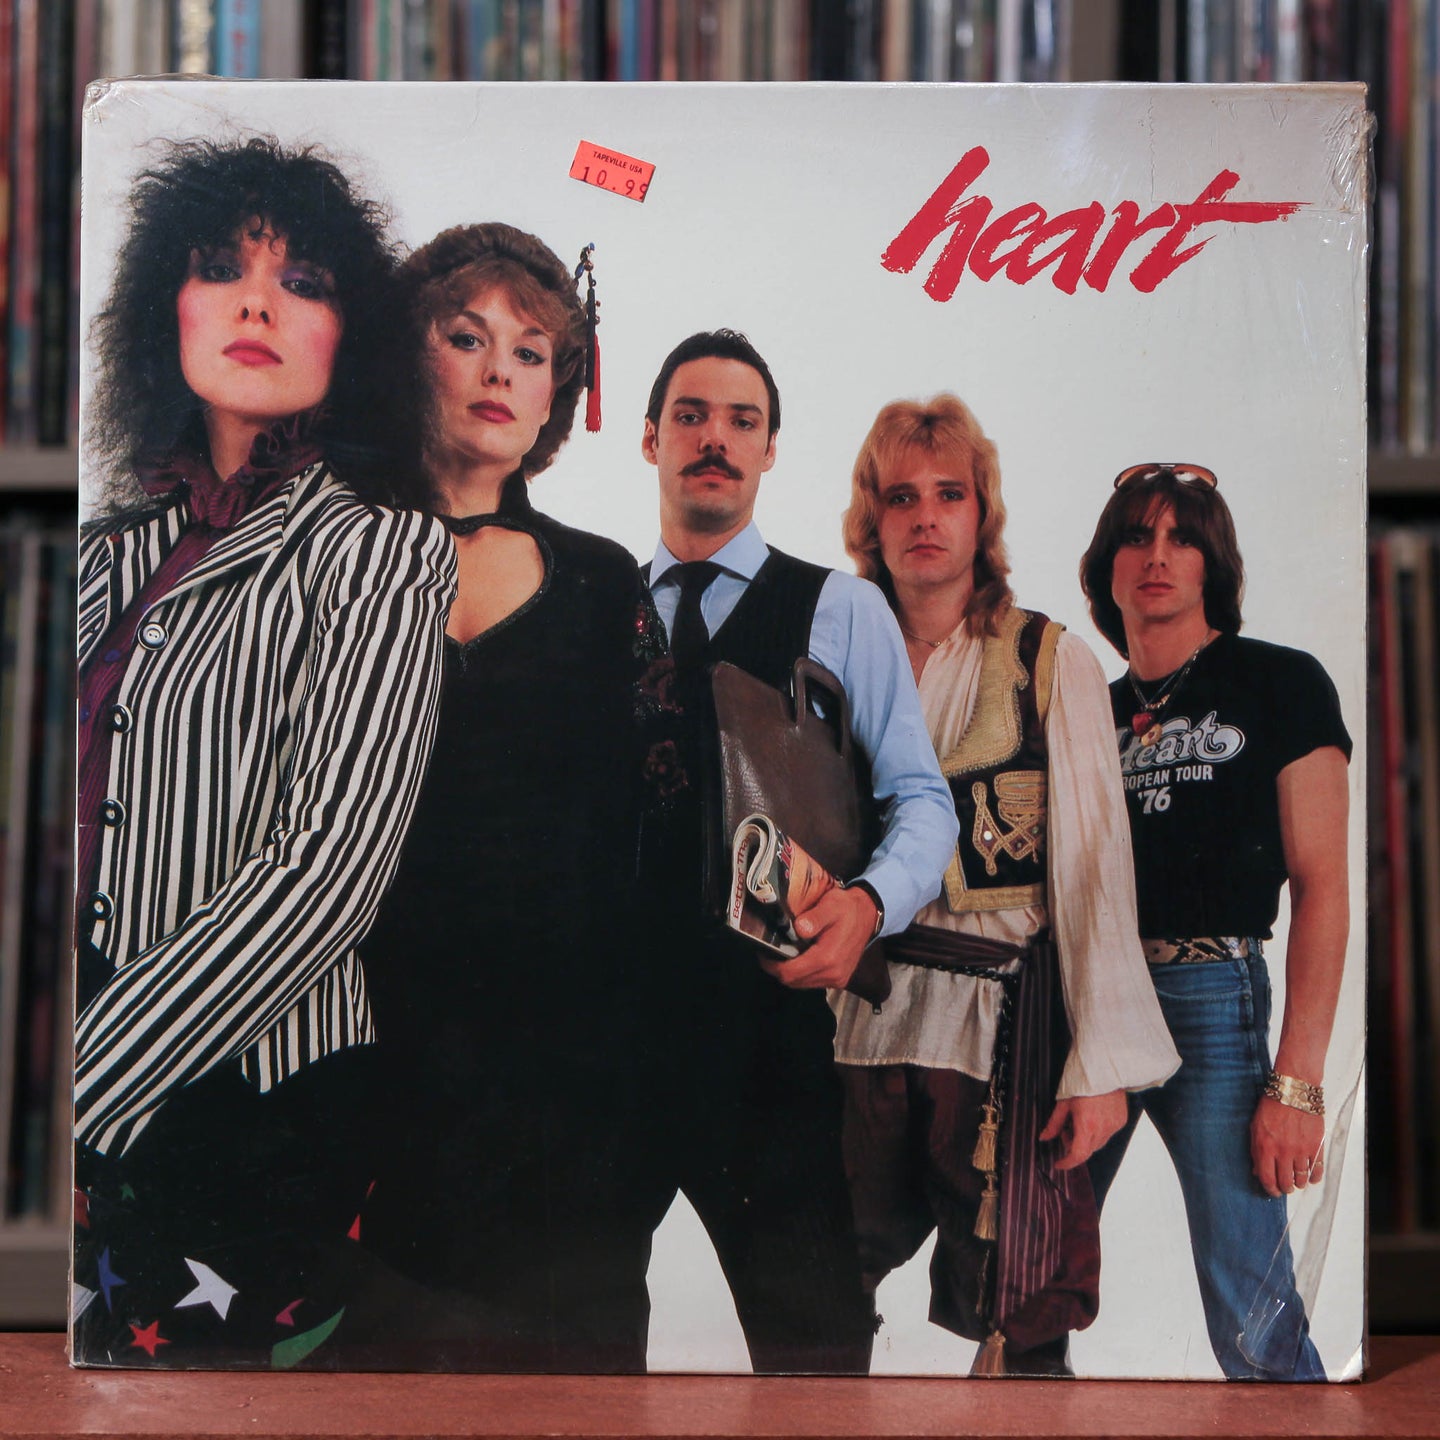 Heart - 2 LP Bundle - Greatest Hits Live & Little Queen - 1980's - Epic